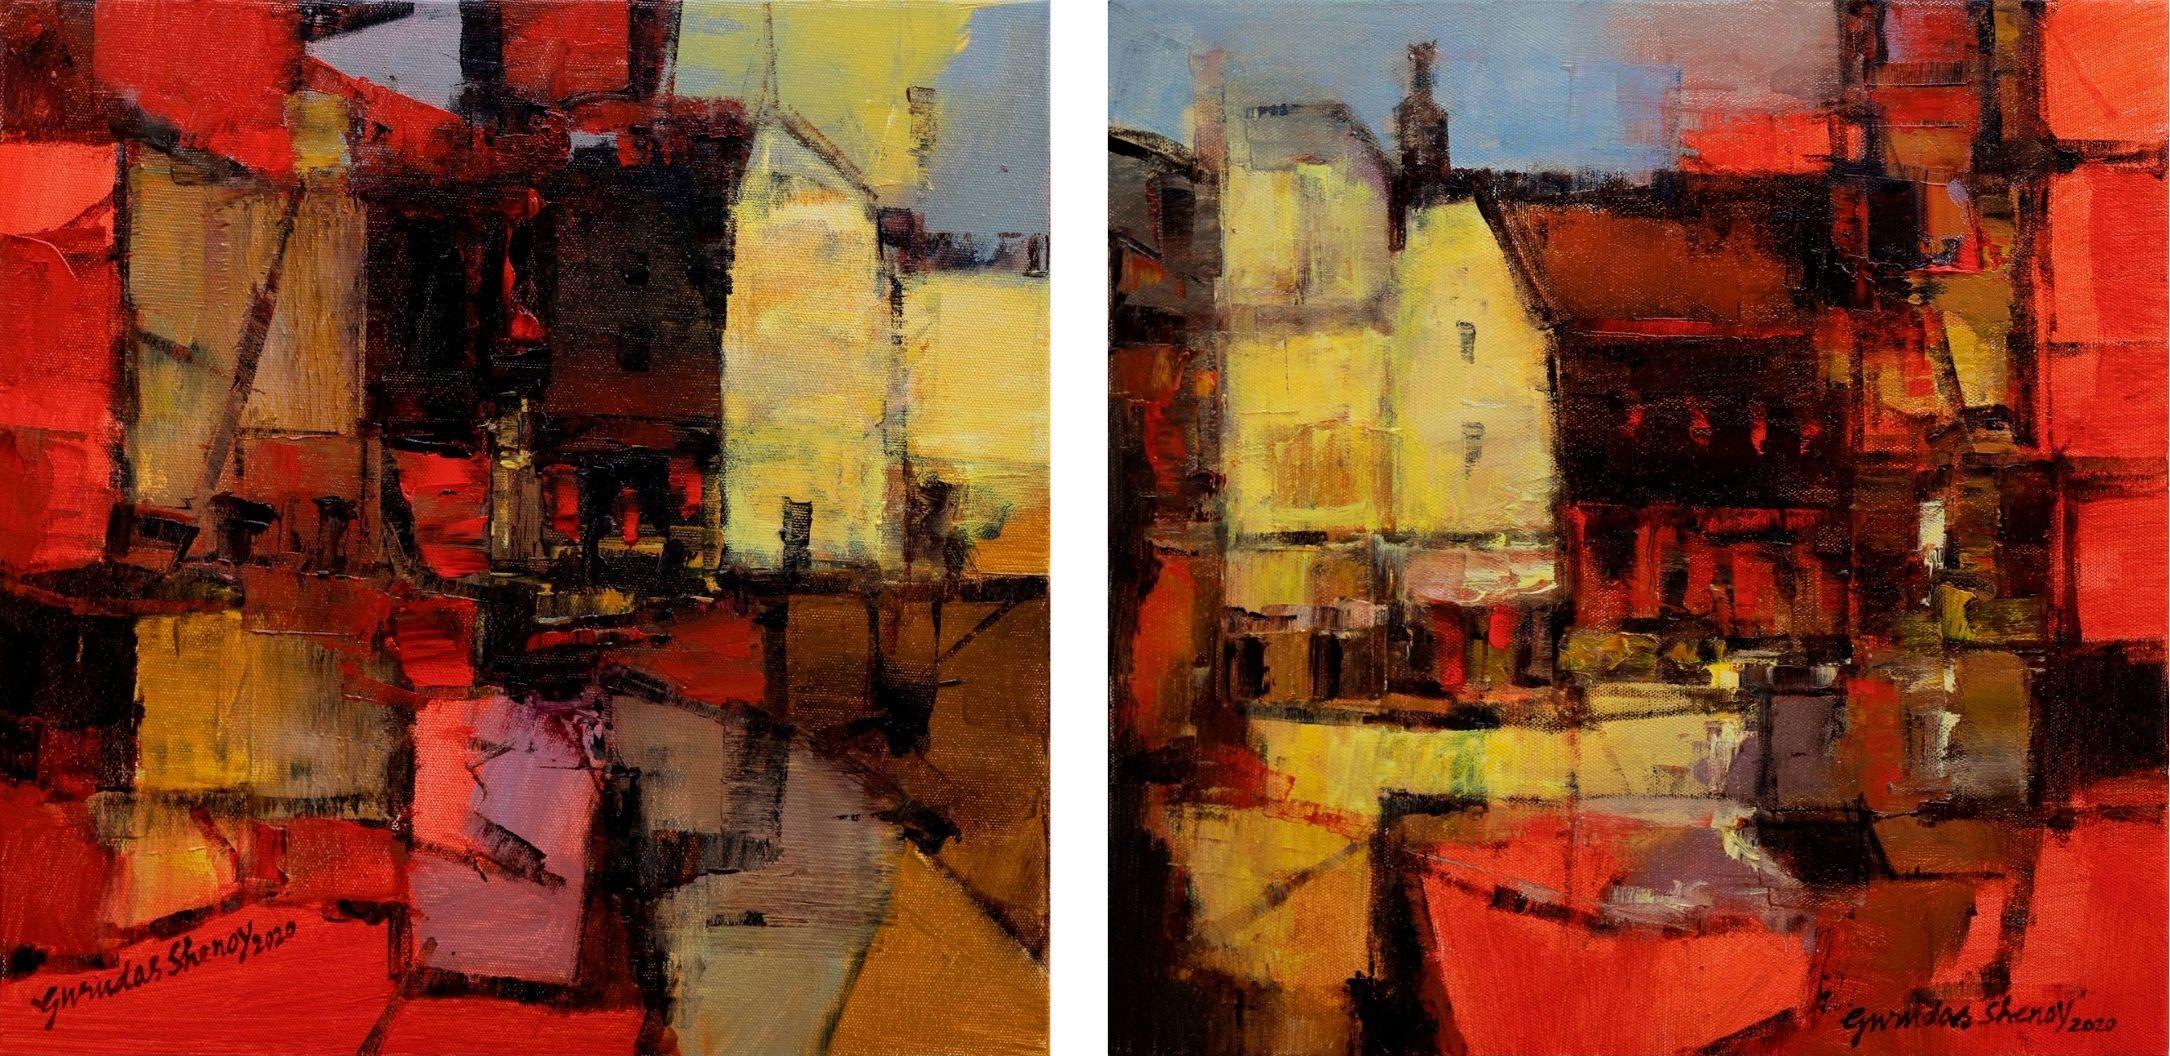 Abstract Painting Gurudas Shenoy - Europe Studio, huile sur toile, rouge, bleu, jaune par l'artiste indien « en stock »